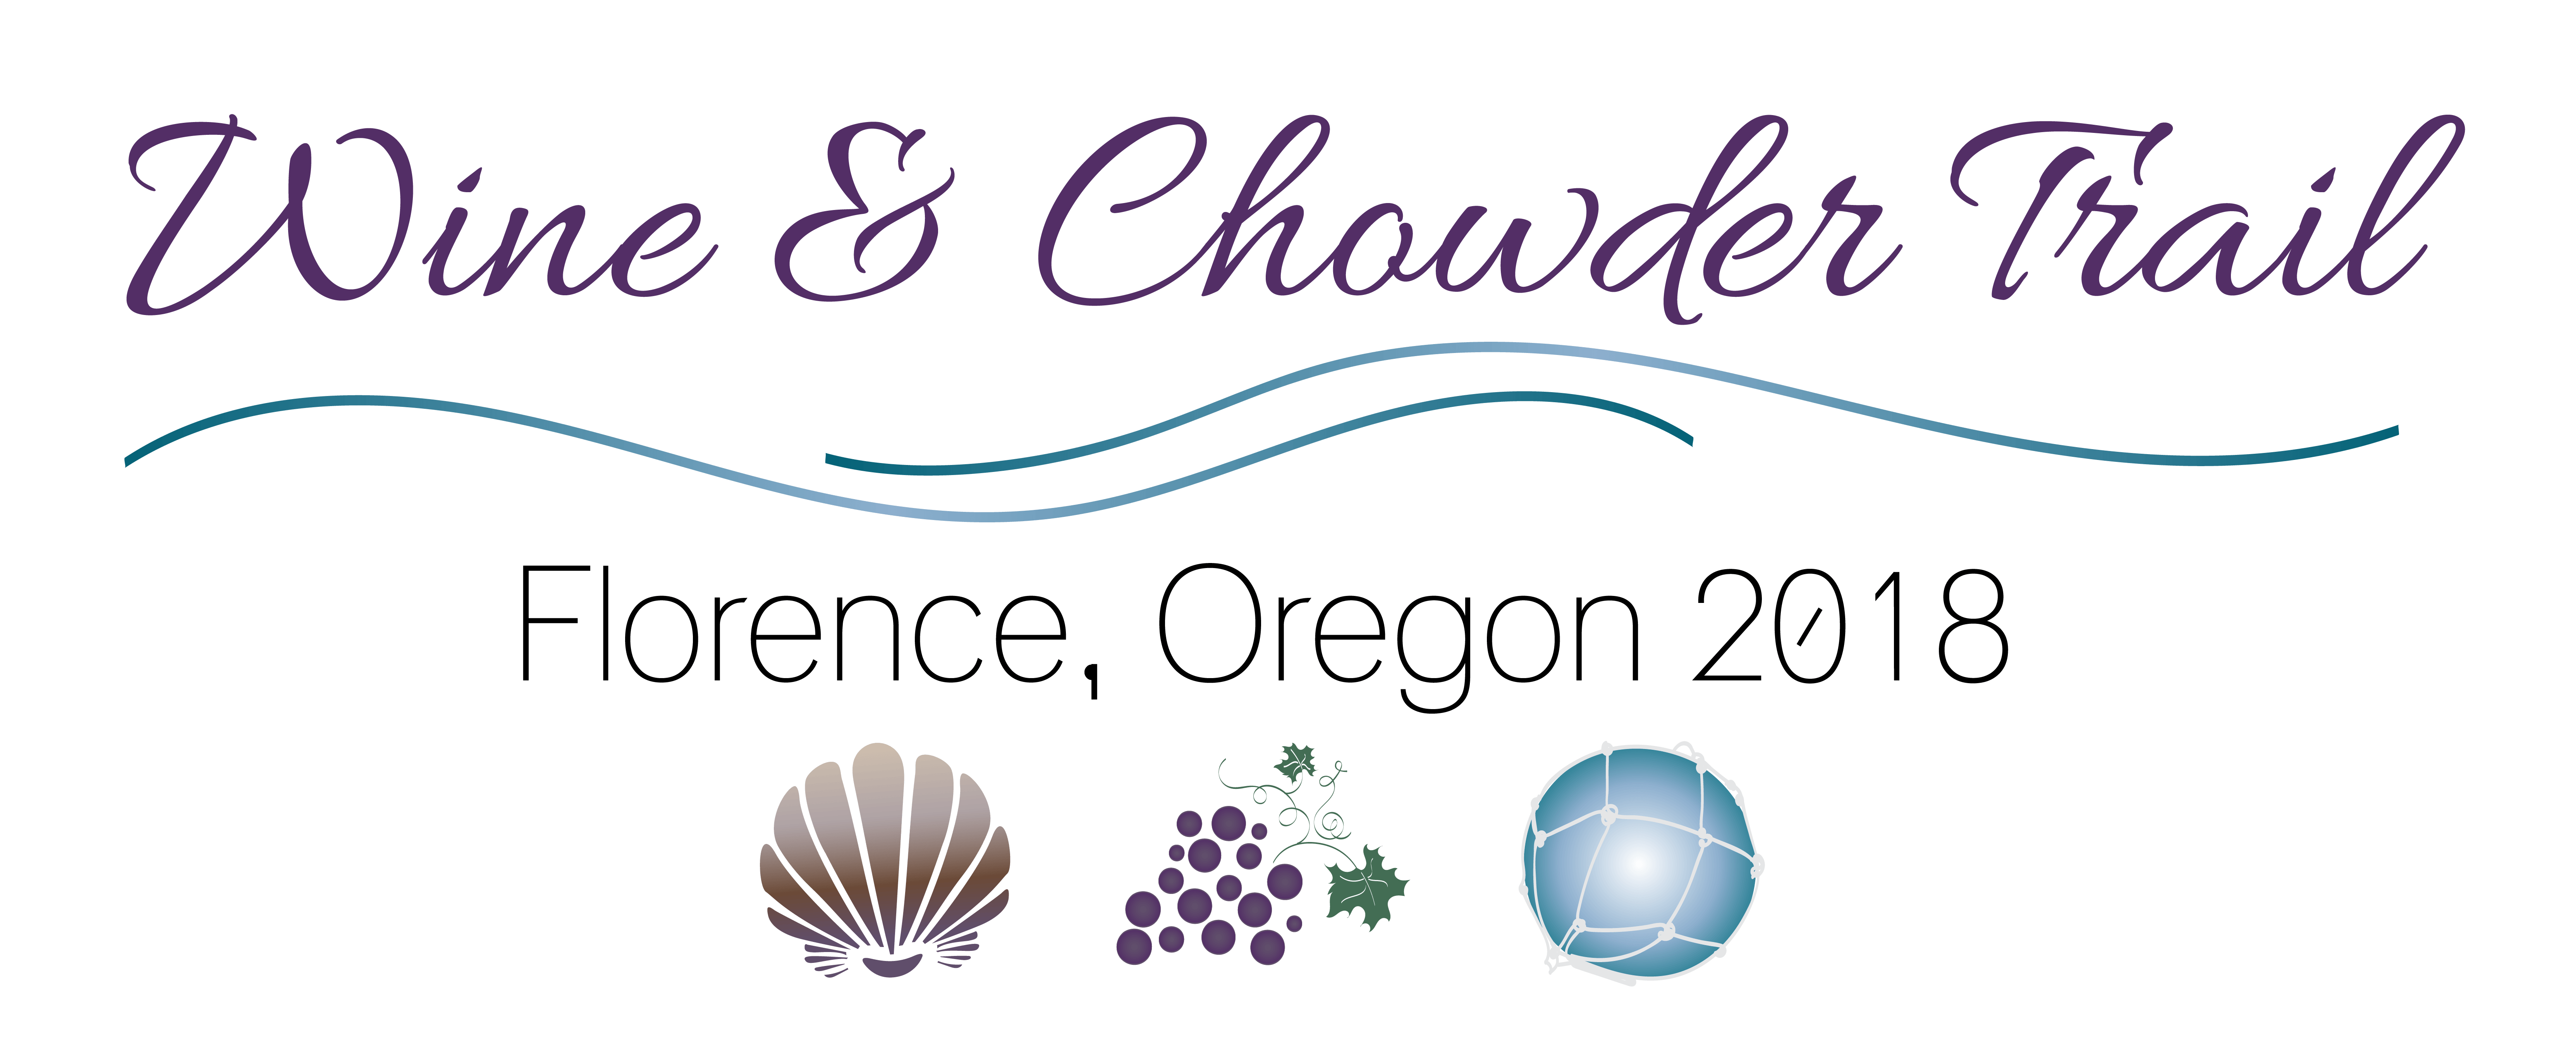 Chowder Logo - 8th Annual Wine & Chowder Trail